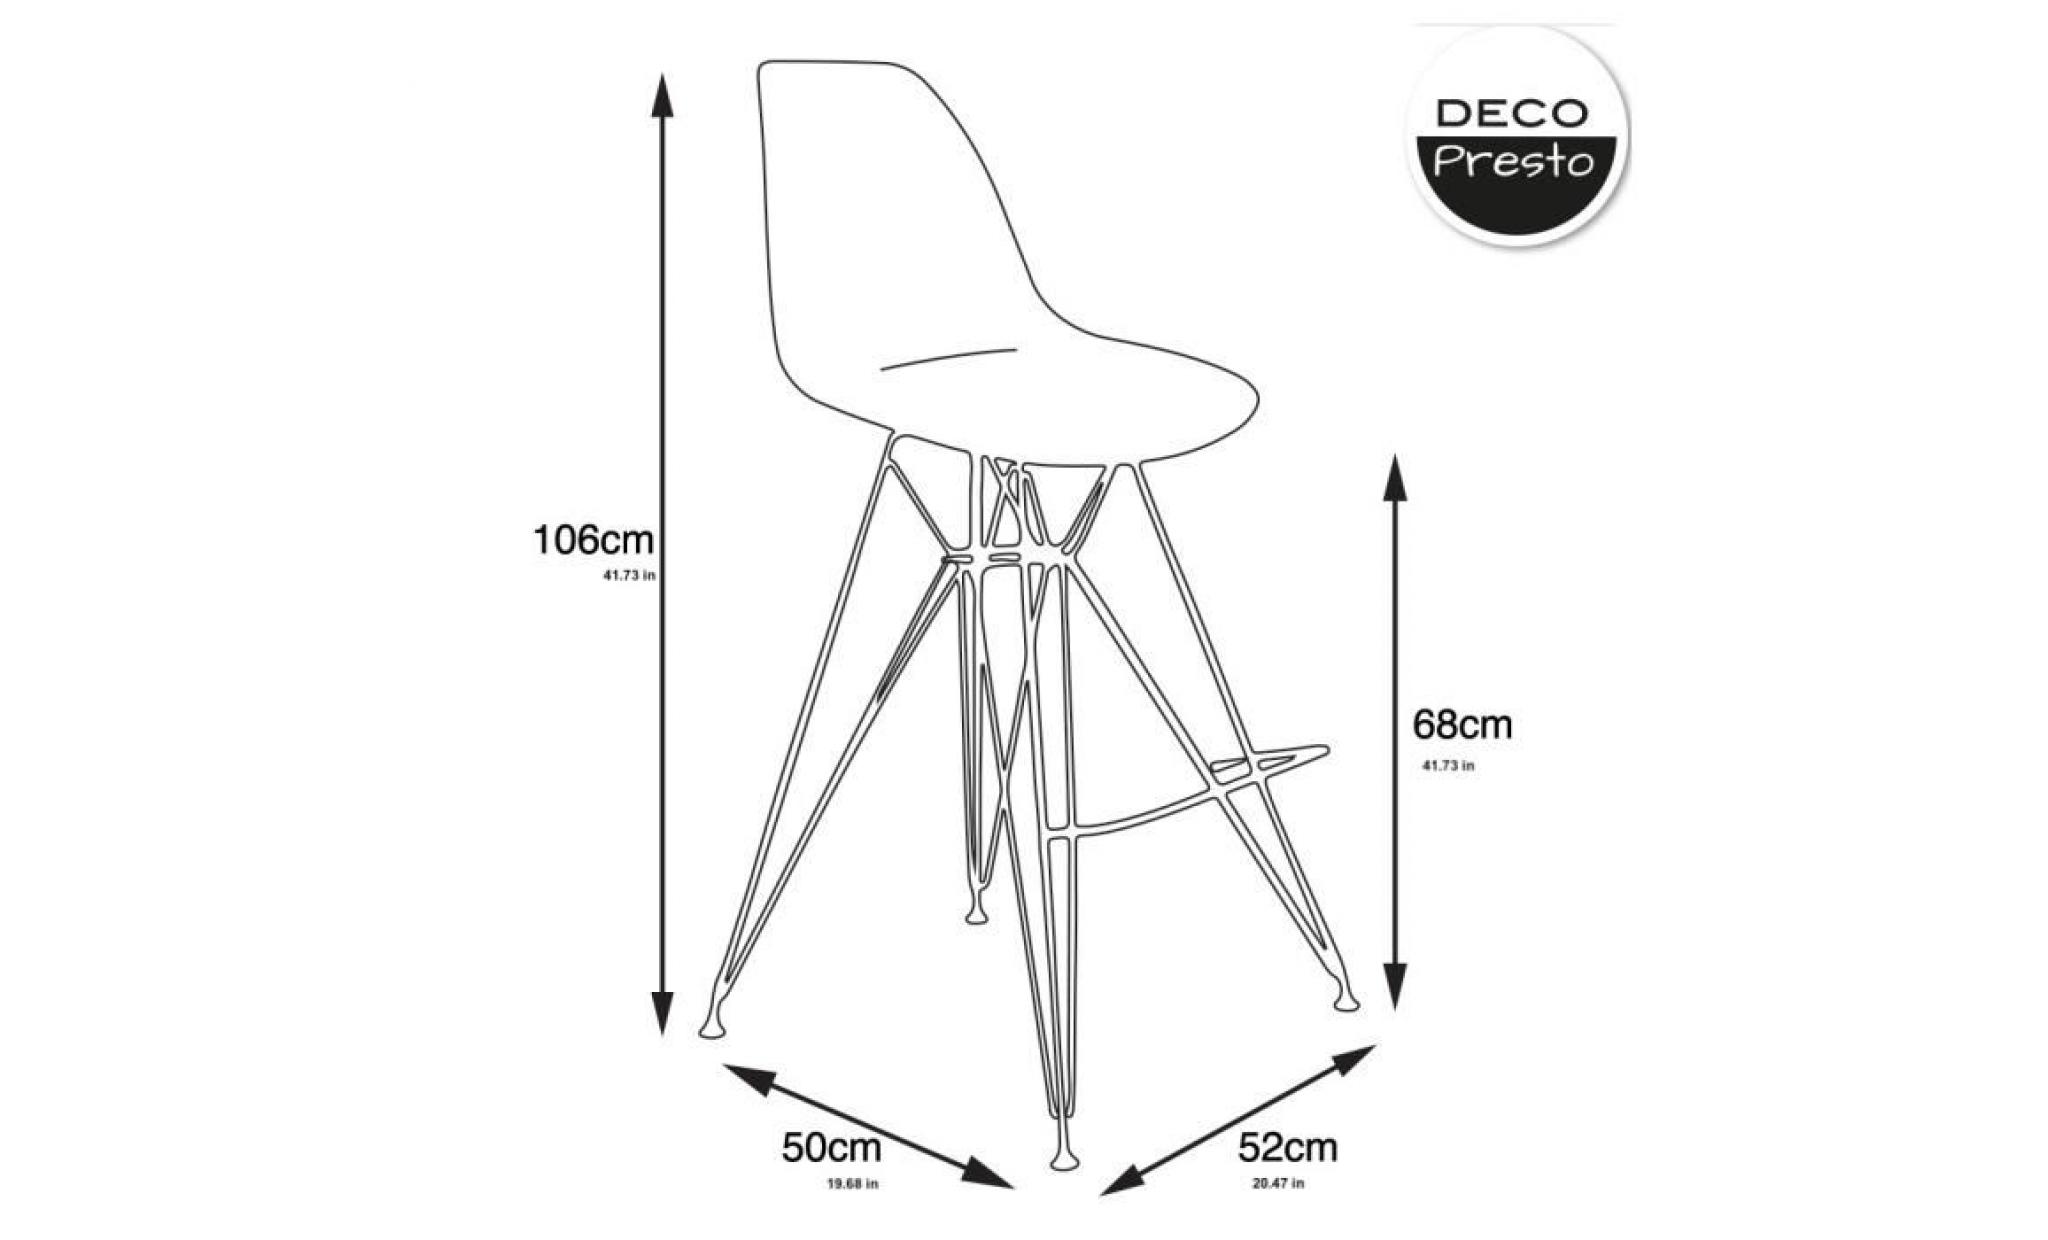 1 x chaise haute tabouret bar design inspiration eiffel   ivoire blanc pieds  acier vernis blanc  decopresto dp dsrhw wi 1p pas cher